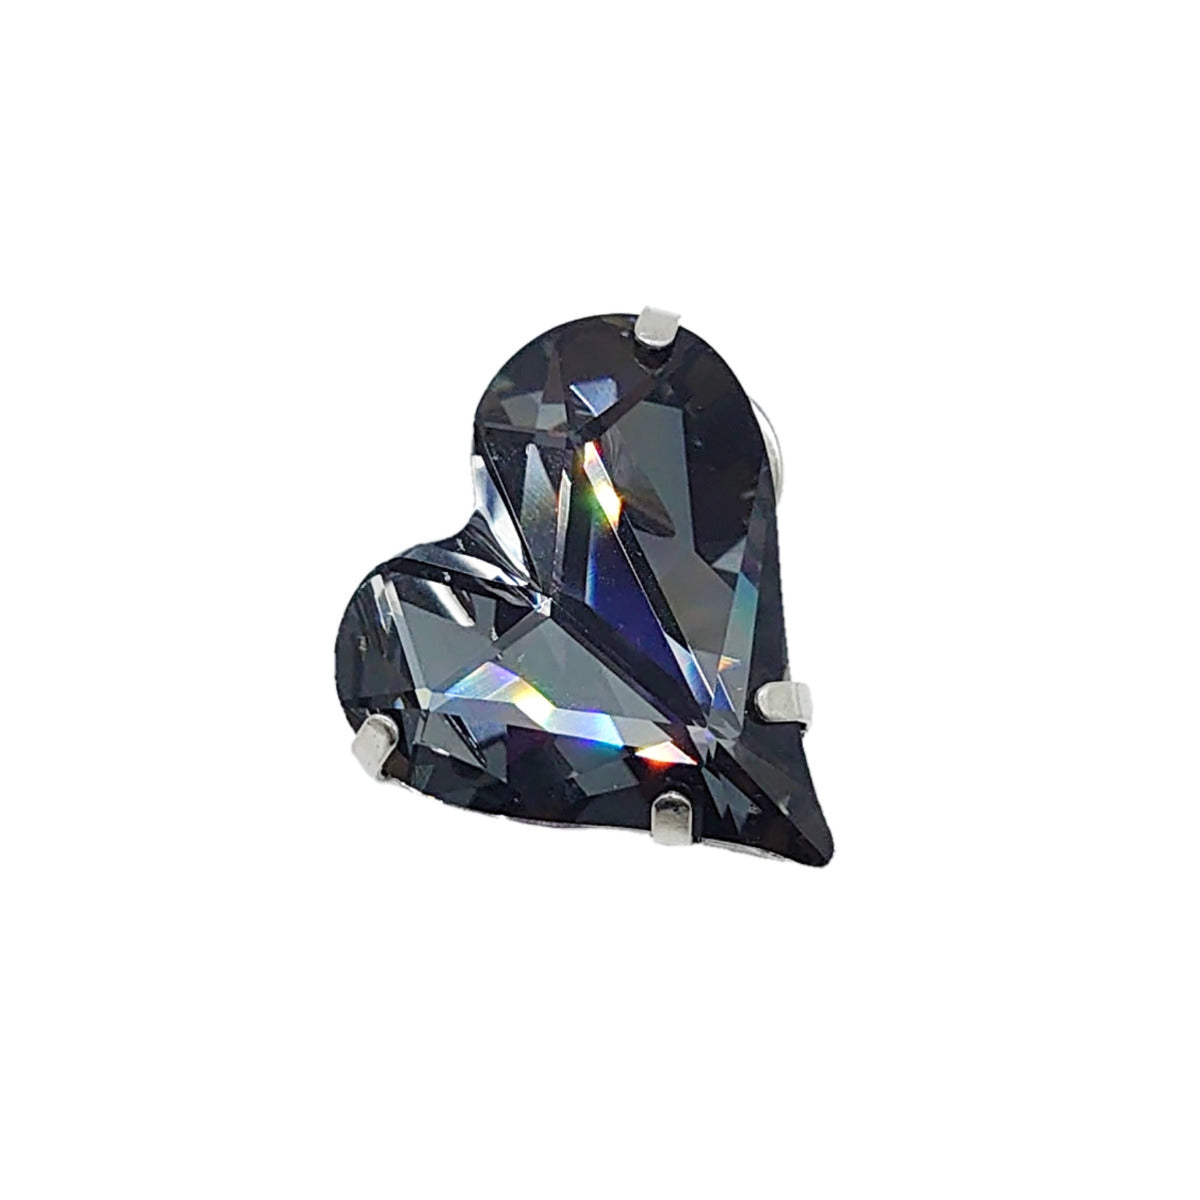 Swarovski Crystals Heart Brooch - TCG London